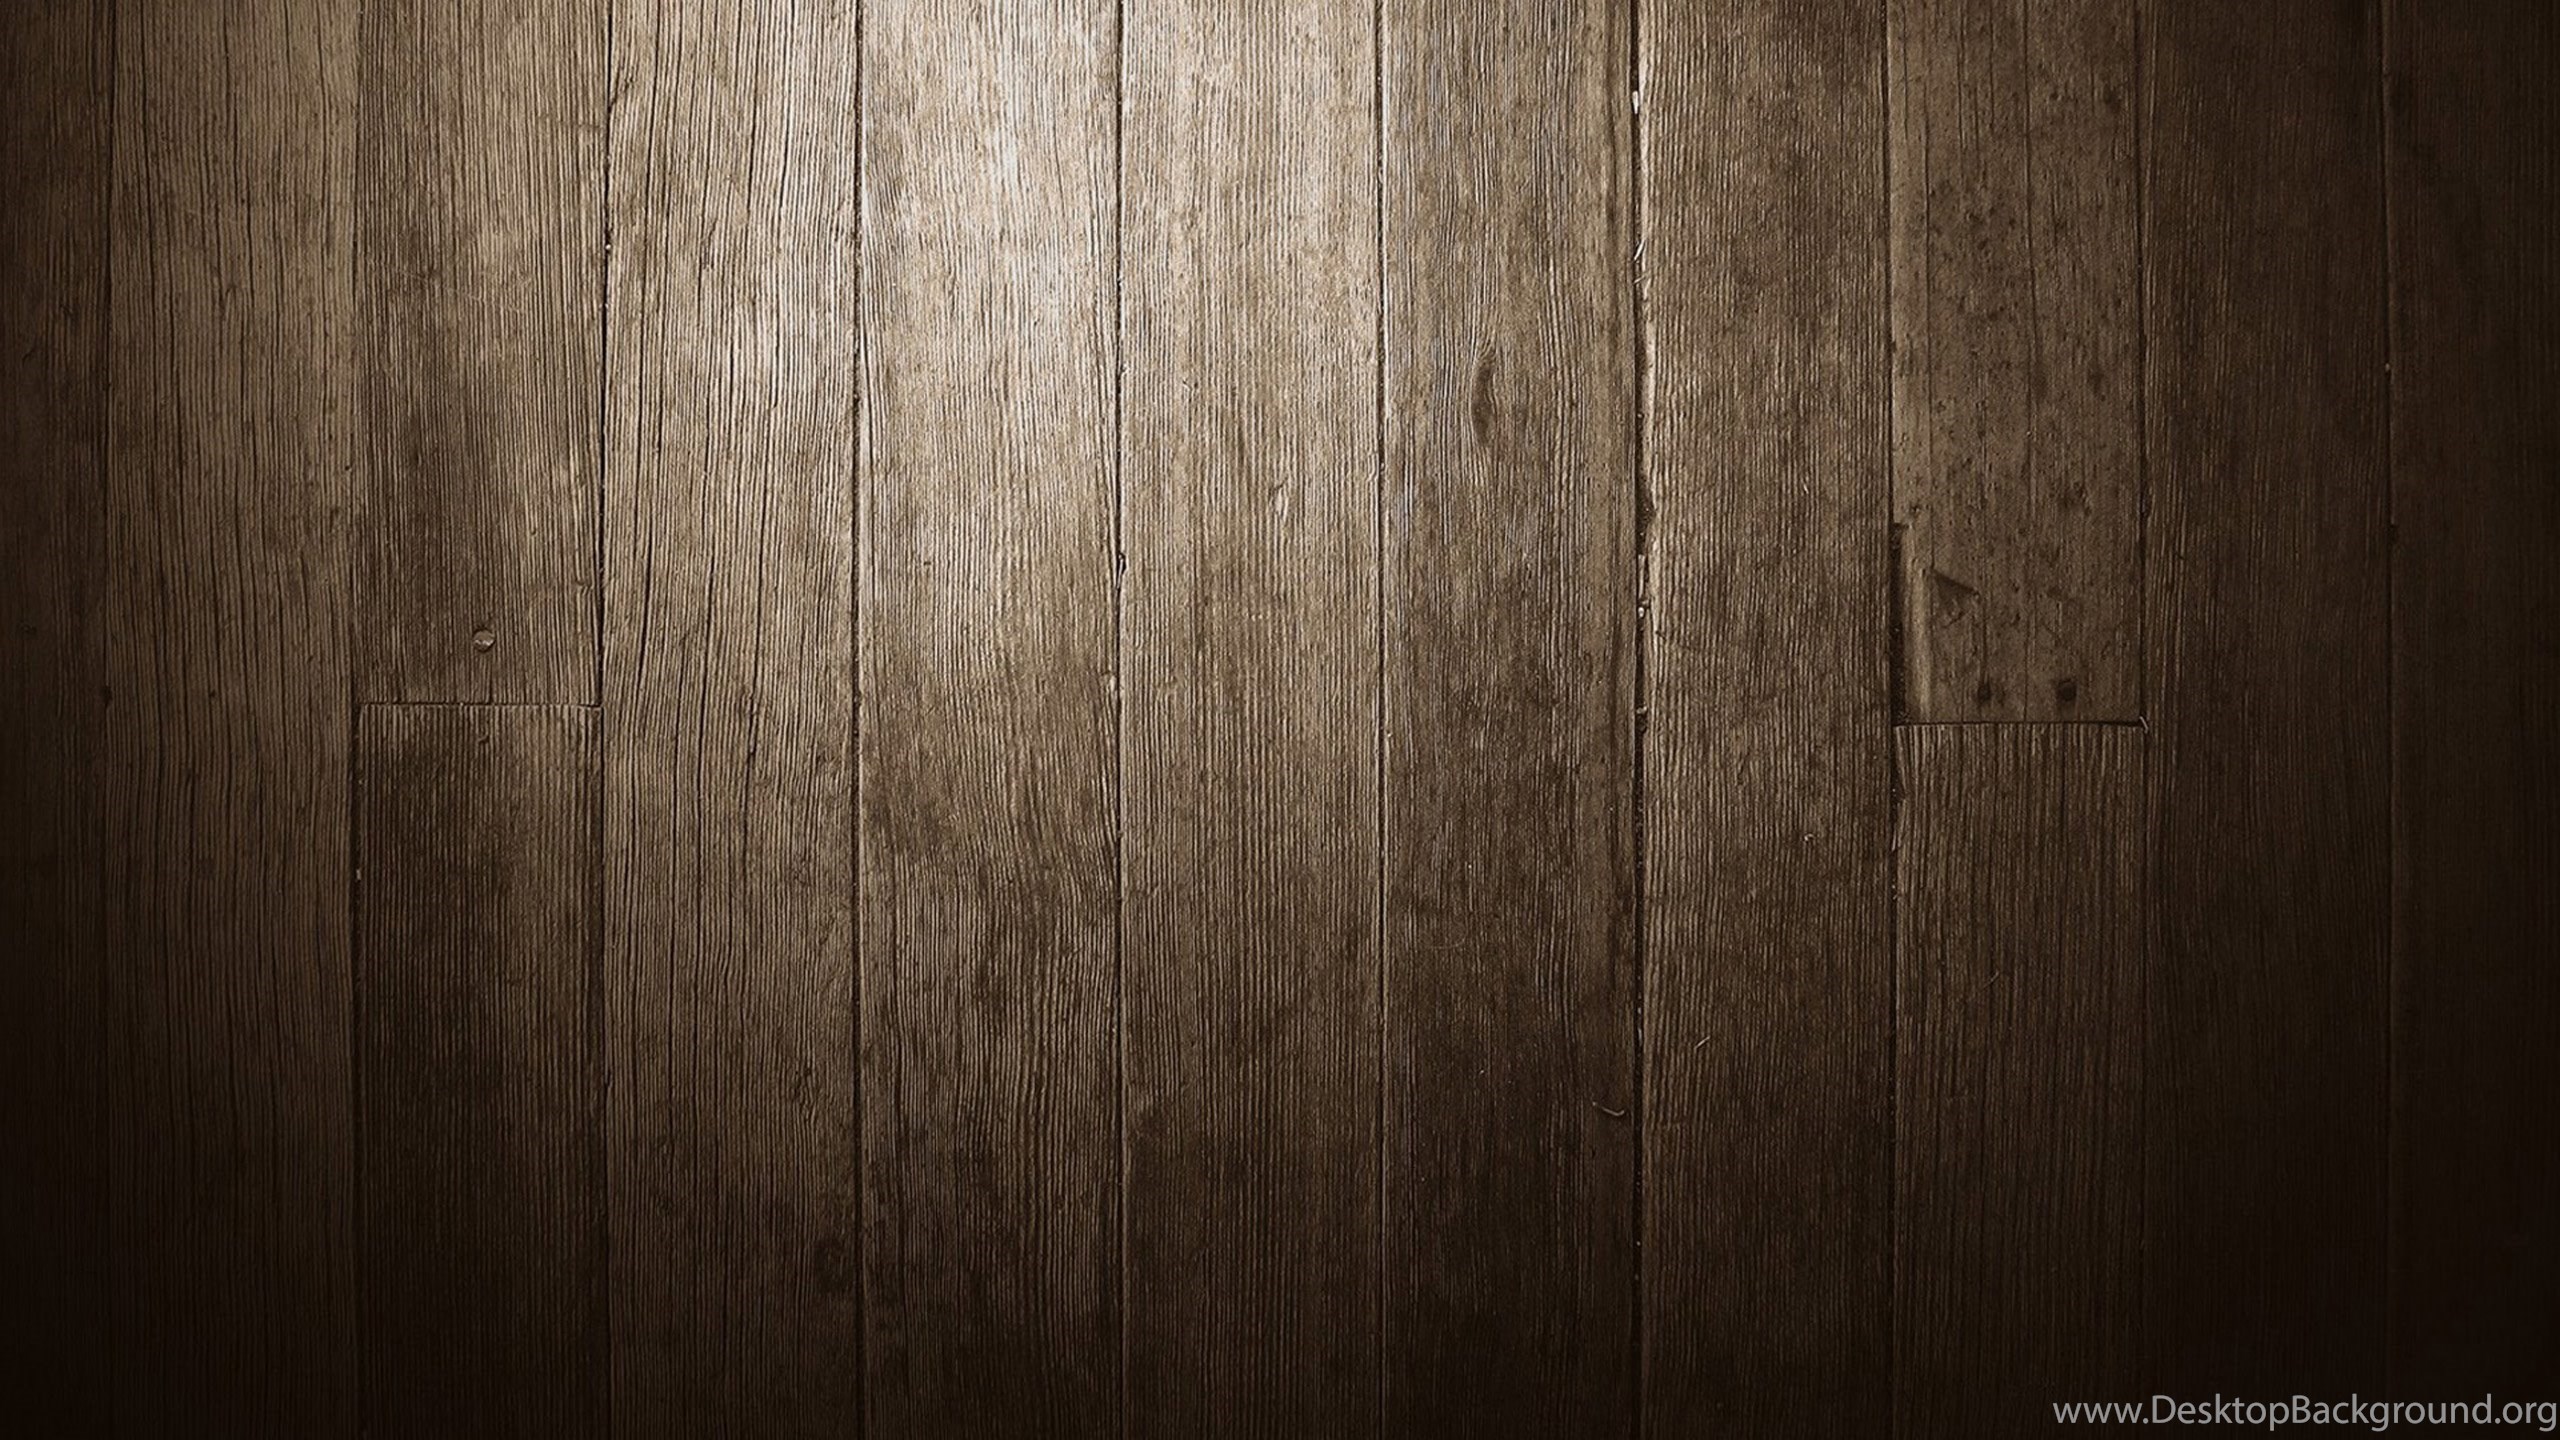 sfondo del desktop in legno,legna,marrone,pavimento in legno,pavimento,legno duro